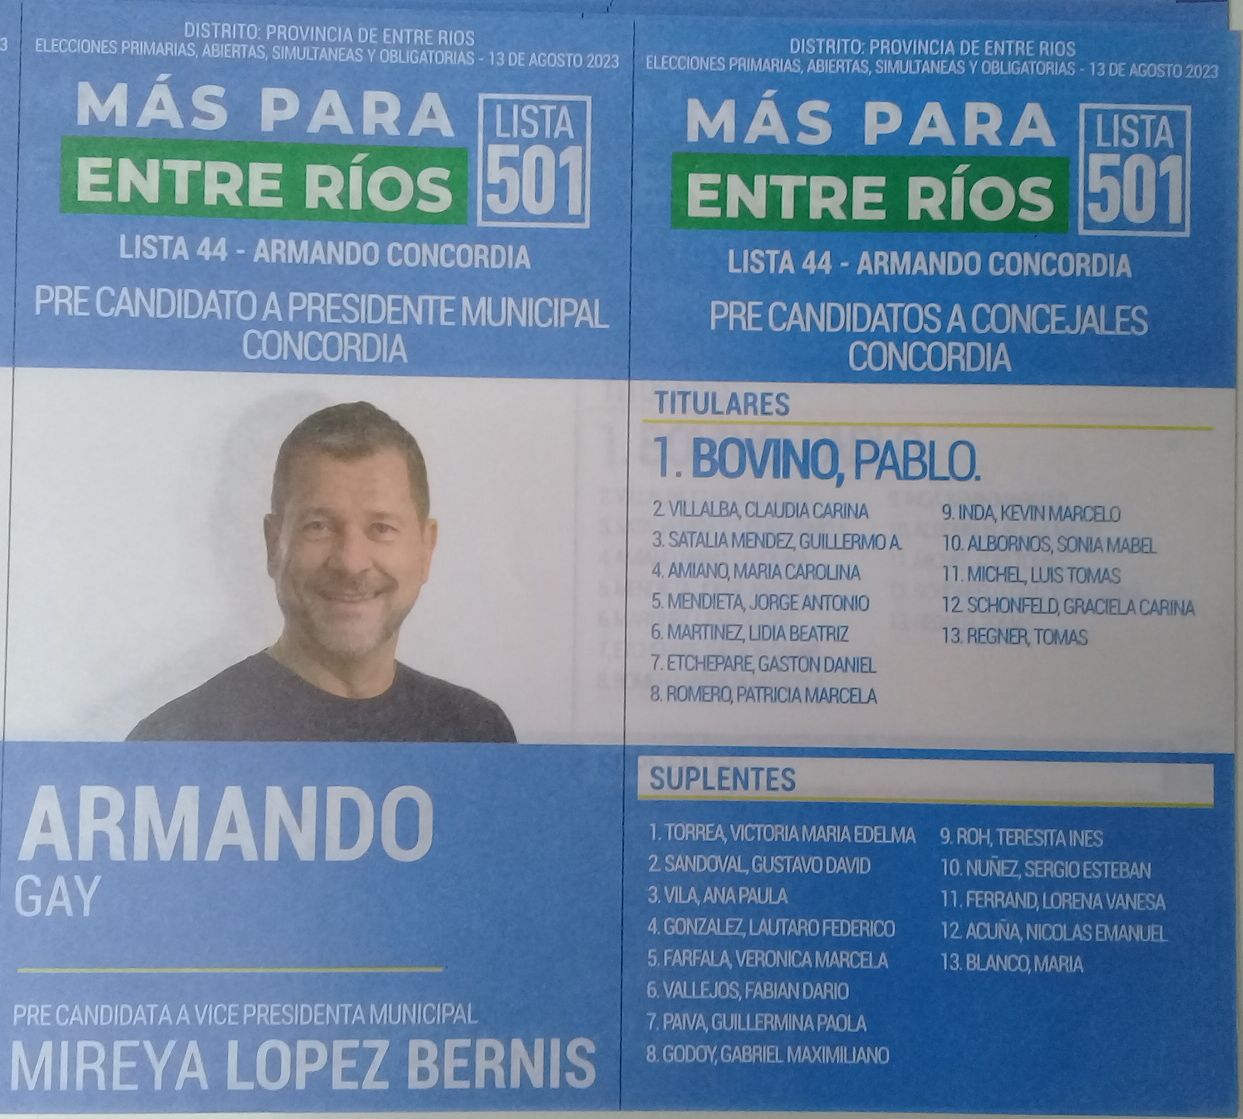 Lista 501: Más Para Entre Ríos - Armando Gay.